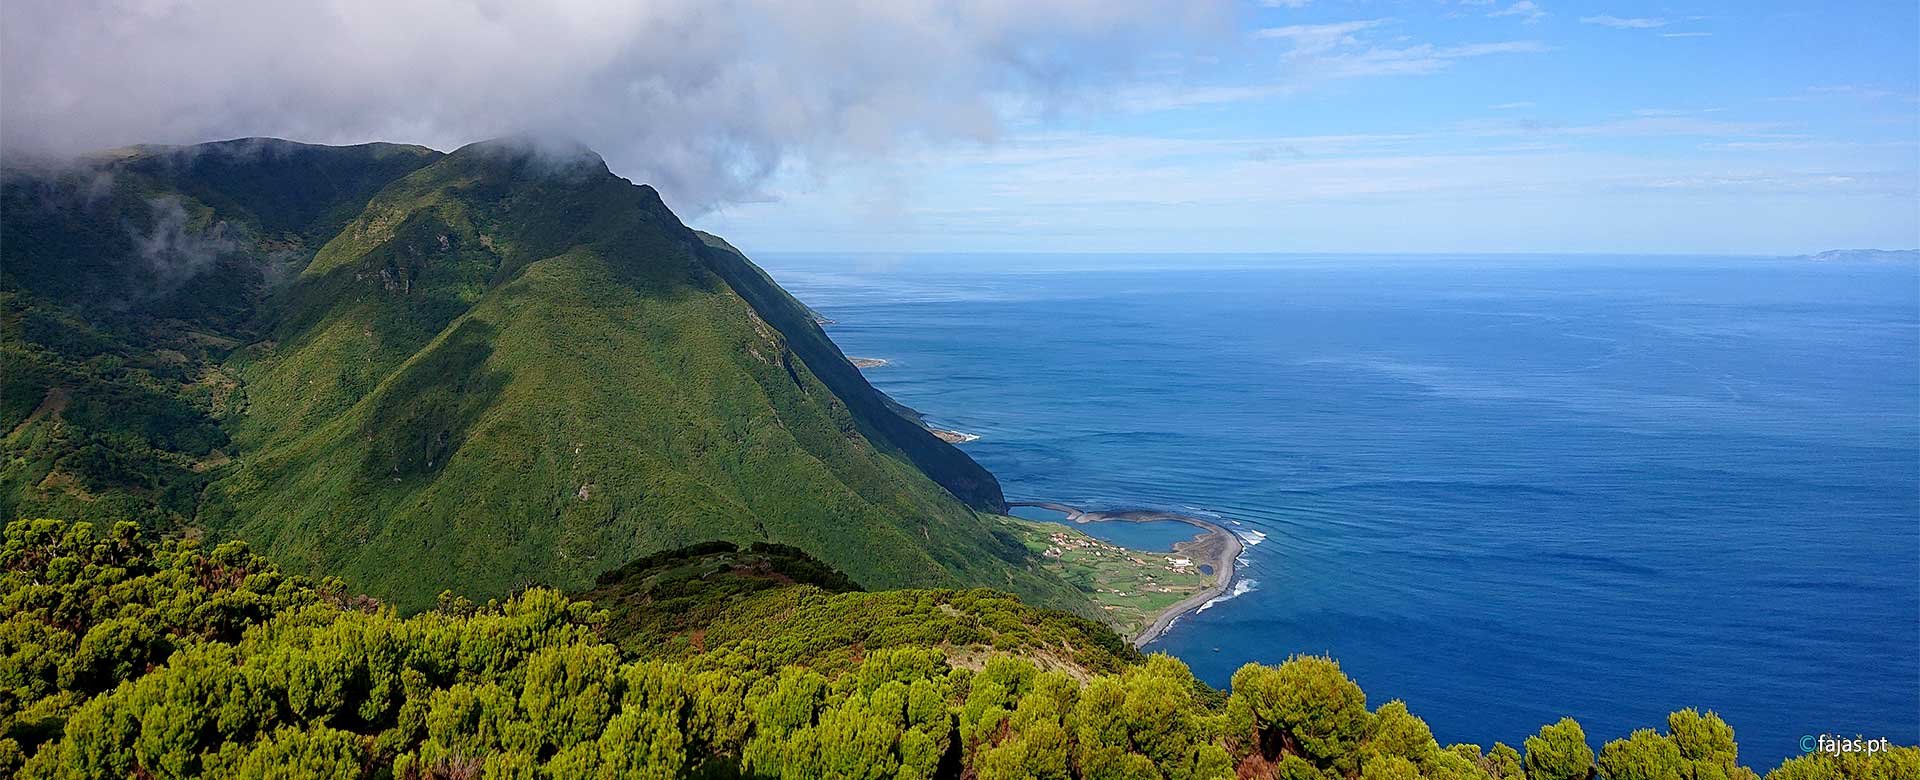 Fajãs da Ilha de São Jorge - Açores